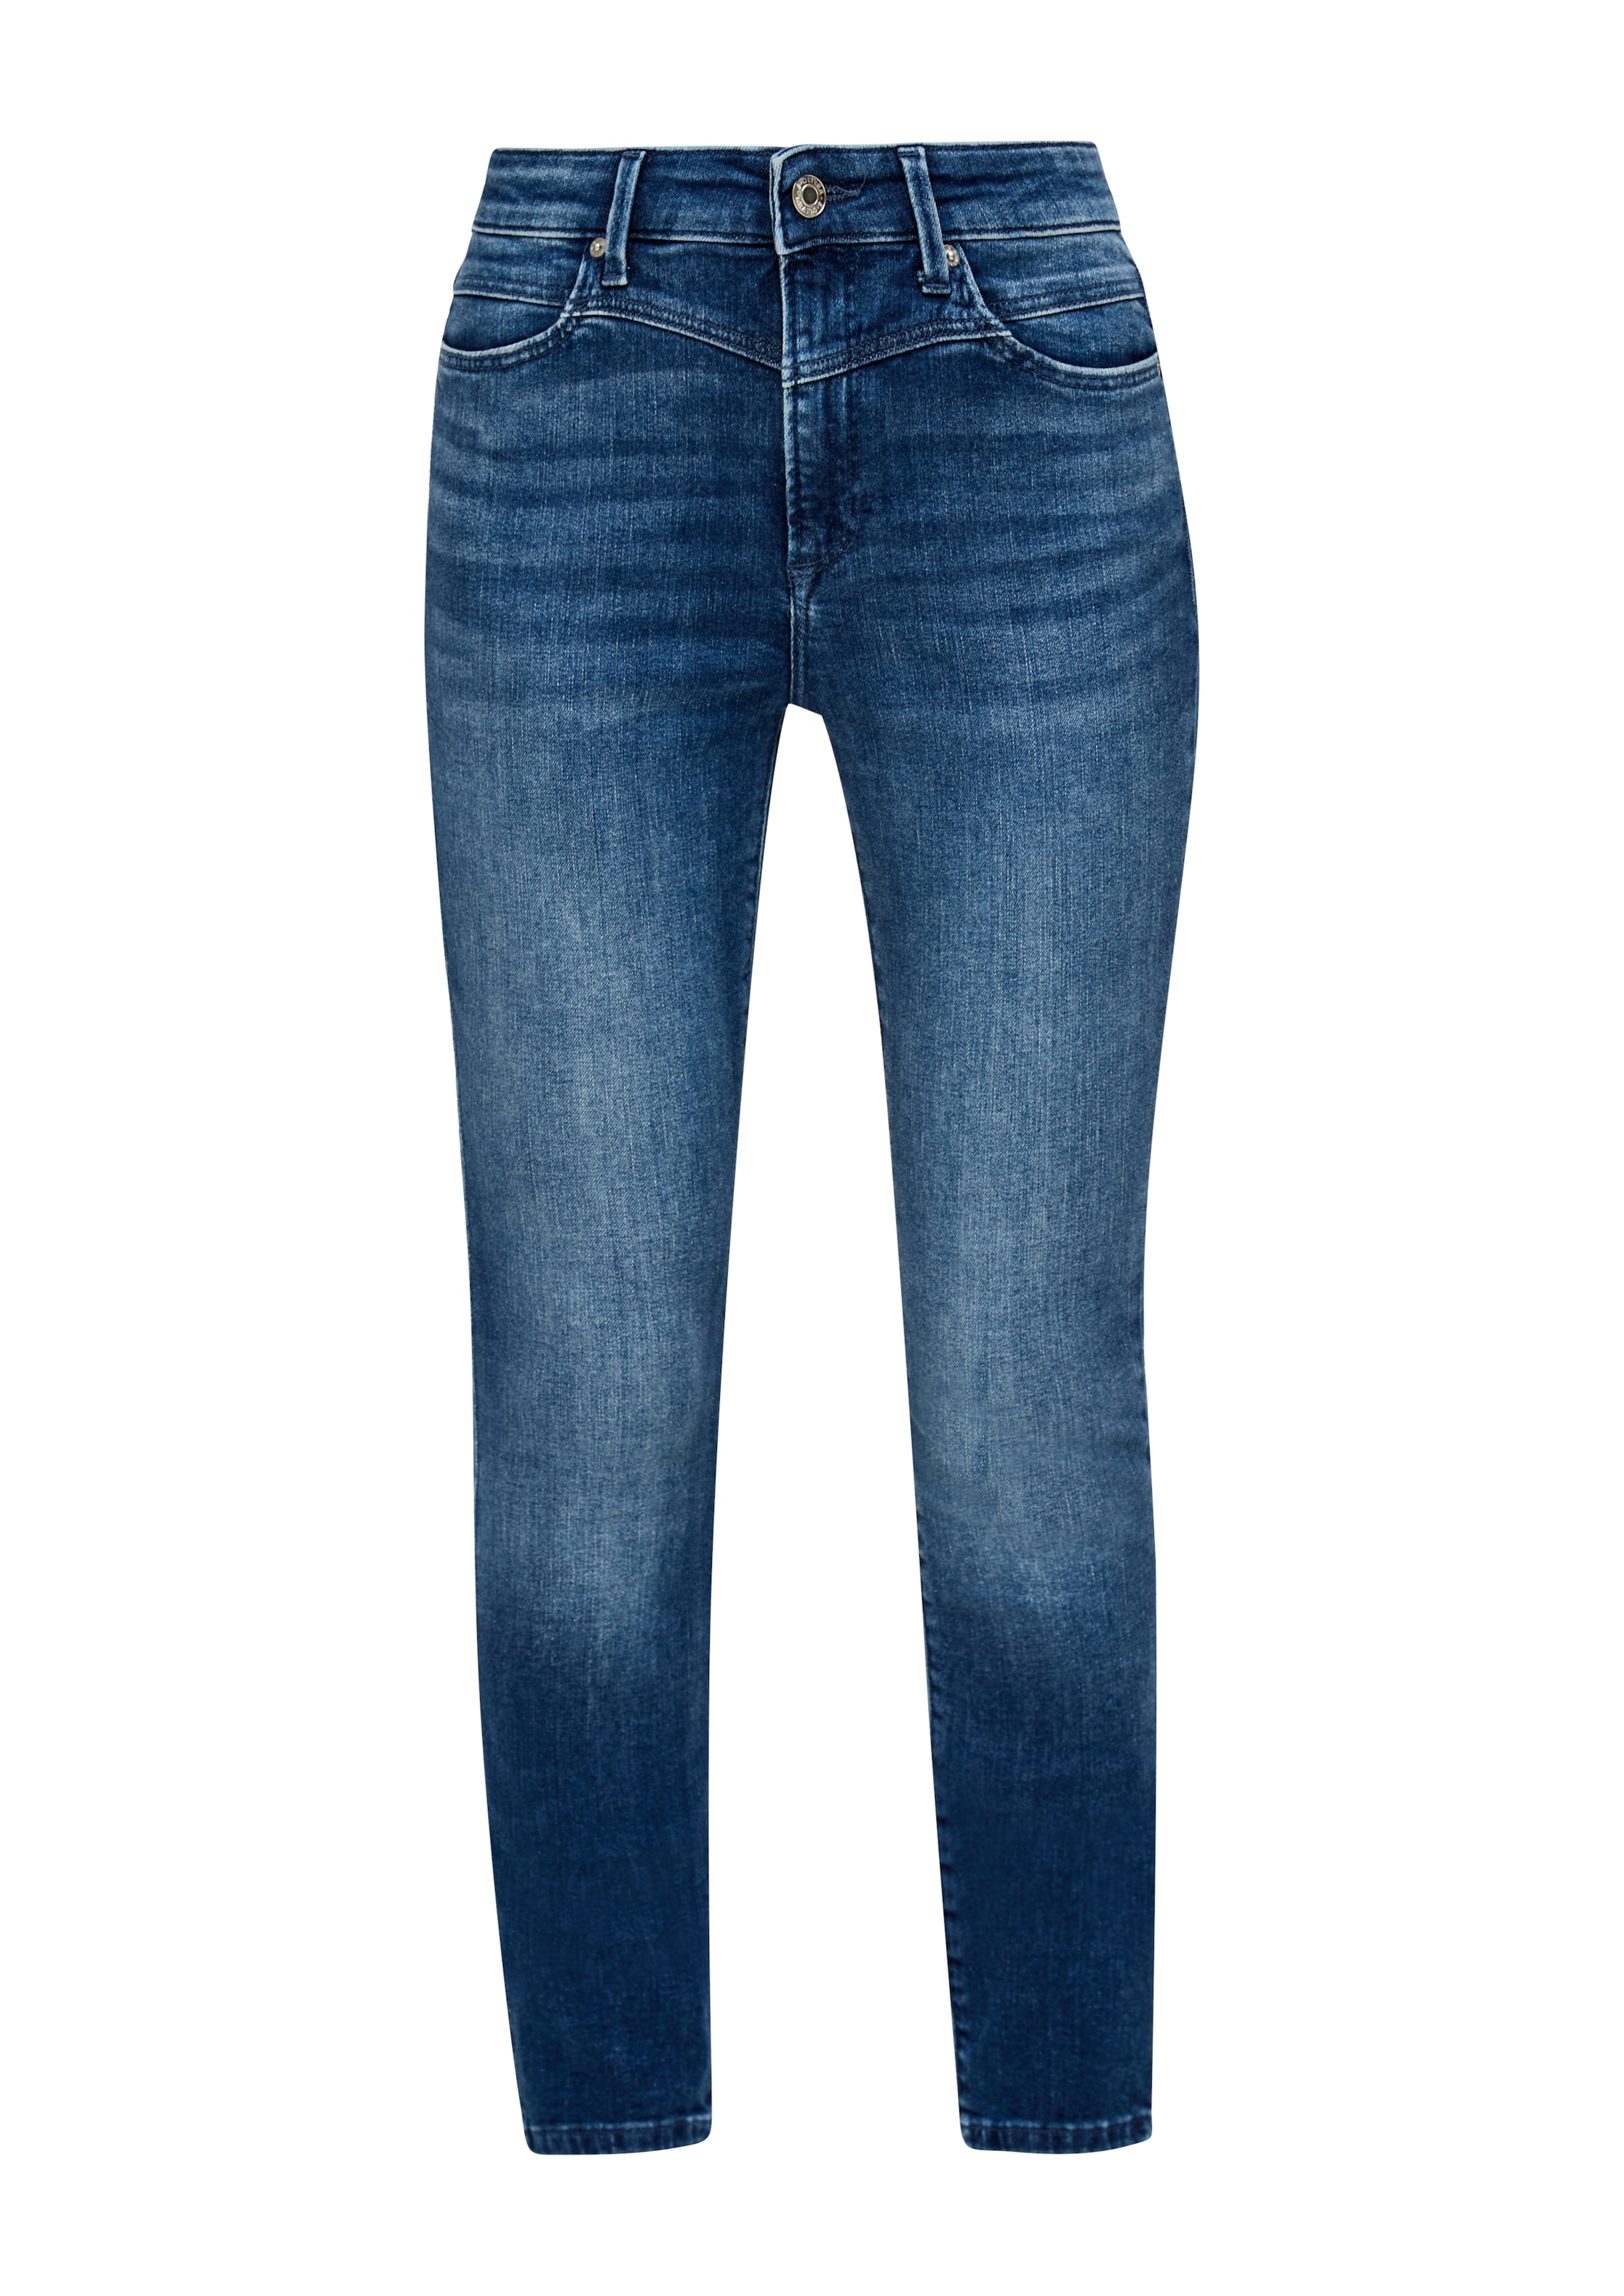 s.Oliver Skinny-fit-Jeans, in coolen, unterschiedlichen Waschungen OTTOversand bei